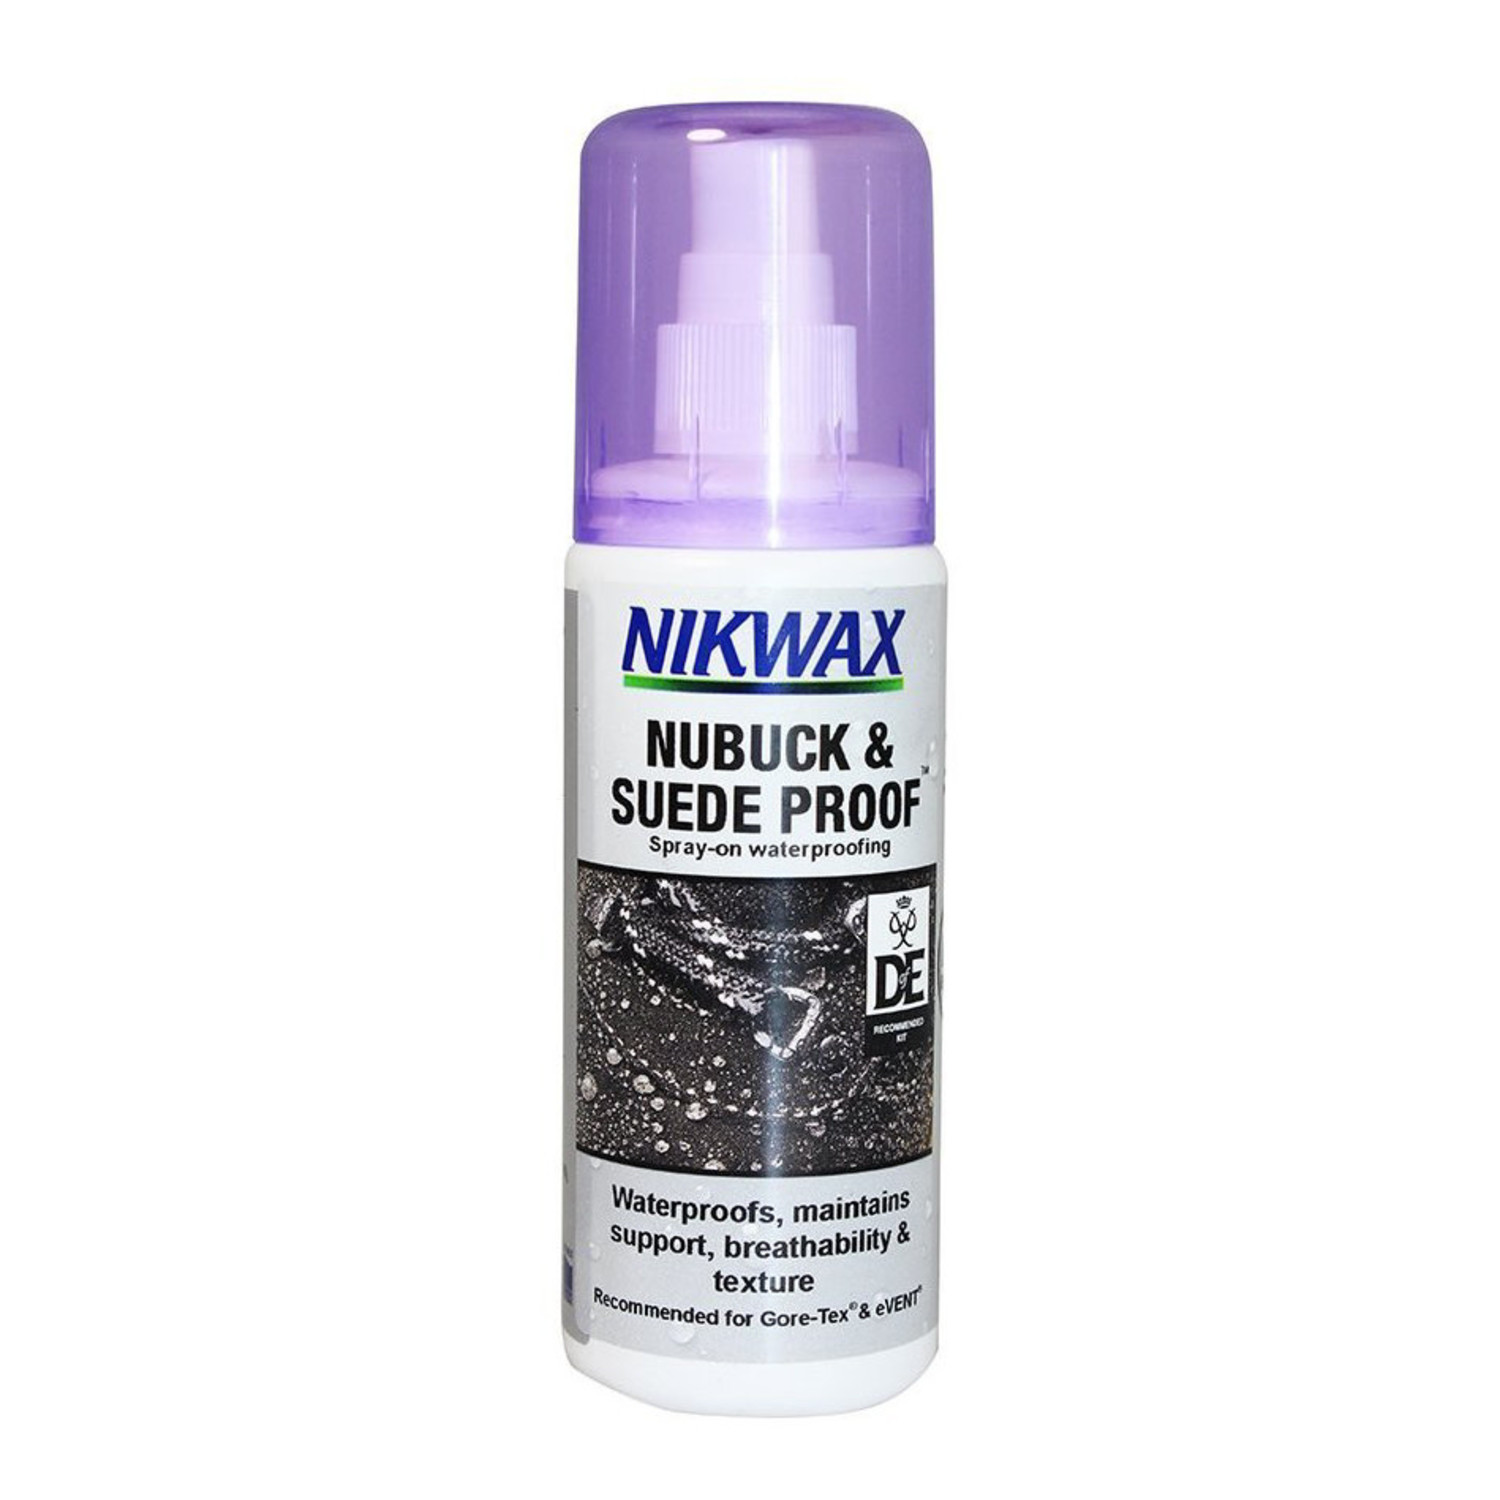 Nikwax Nubuck & Suede Proof Waterproofing 